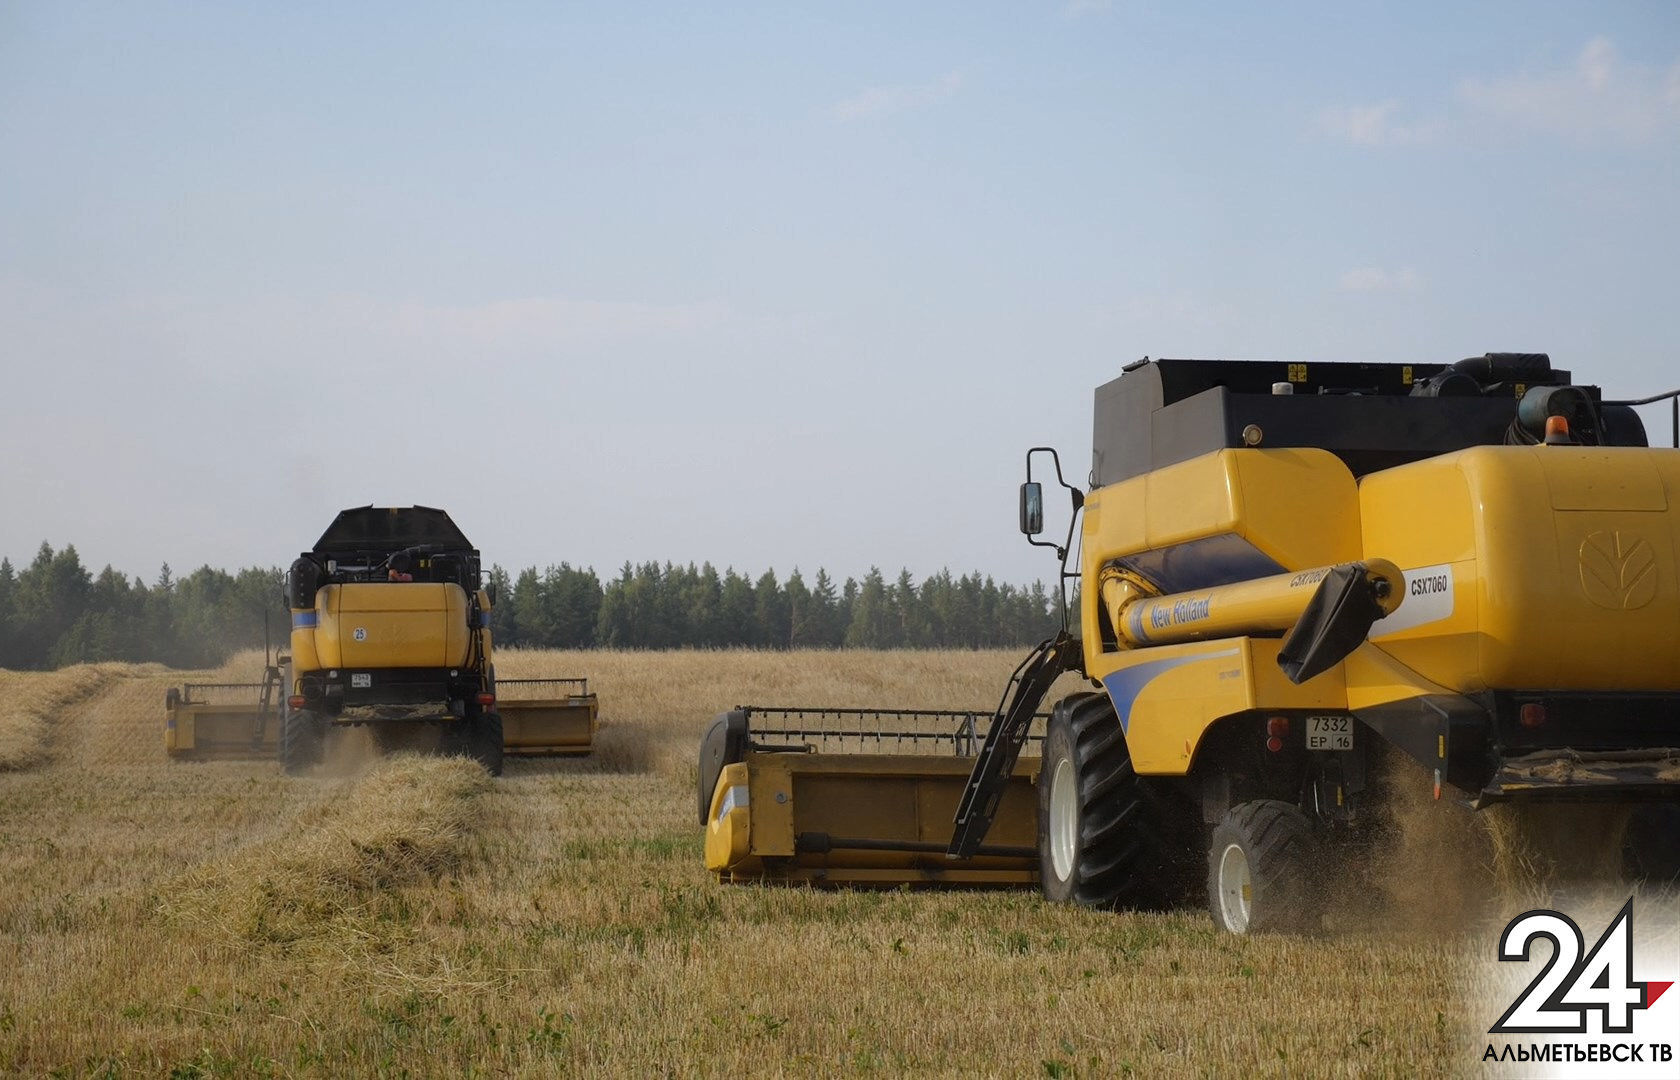 Татарстан лидирует среди регионов России по количеству приобретенной сельхозтехники